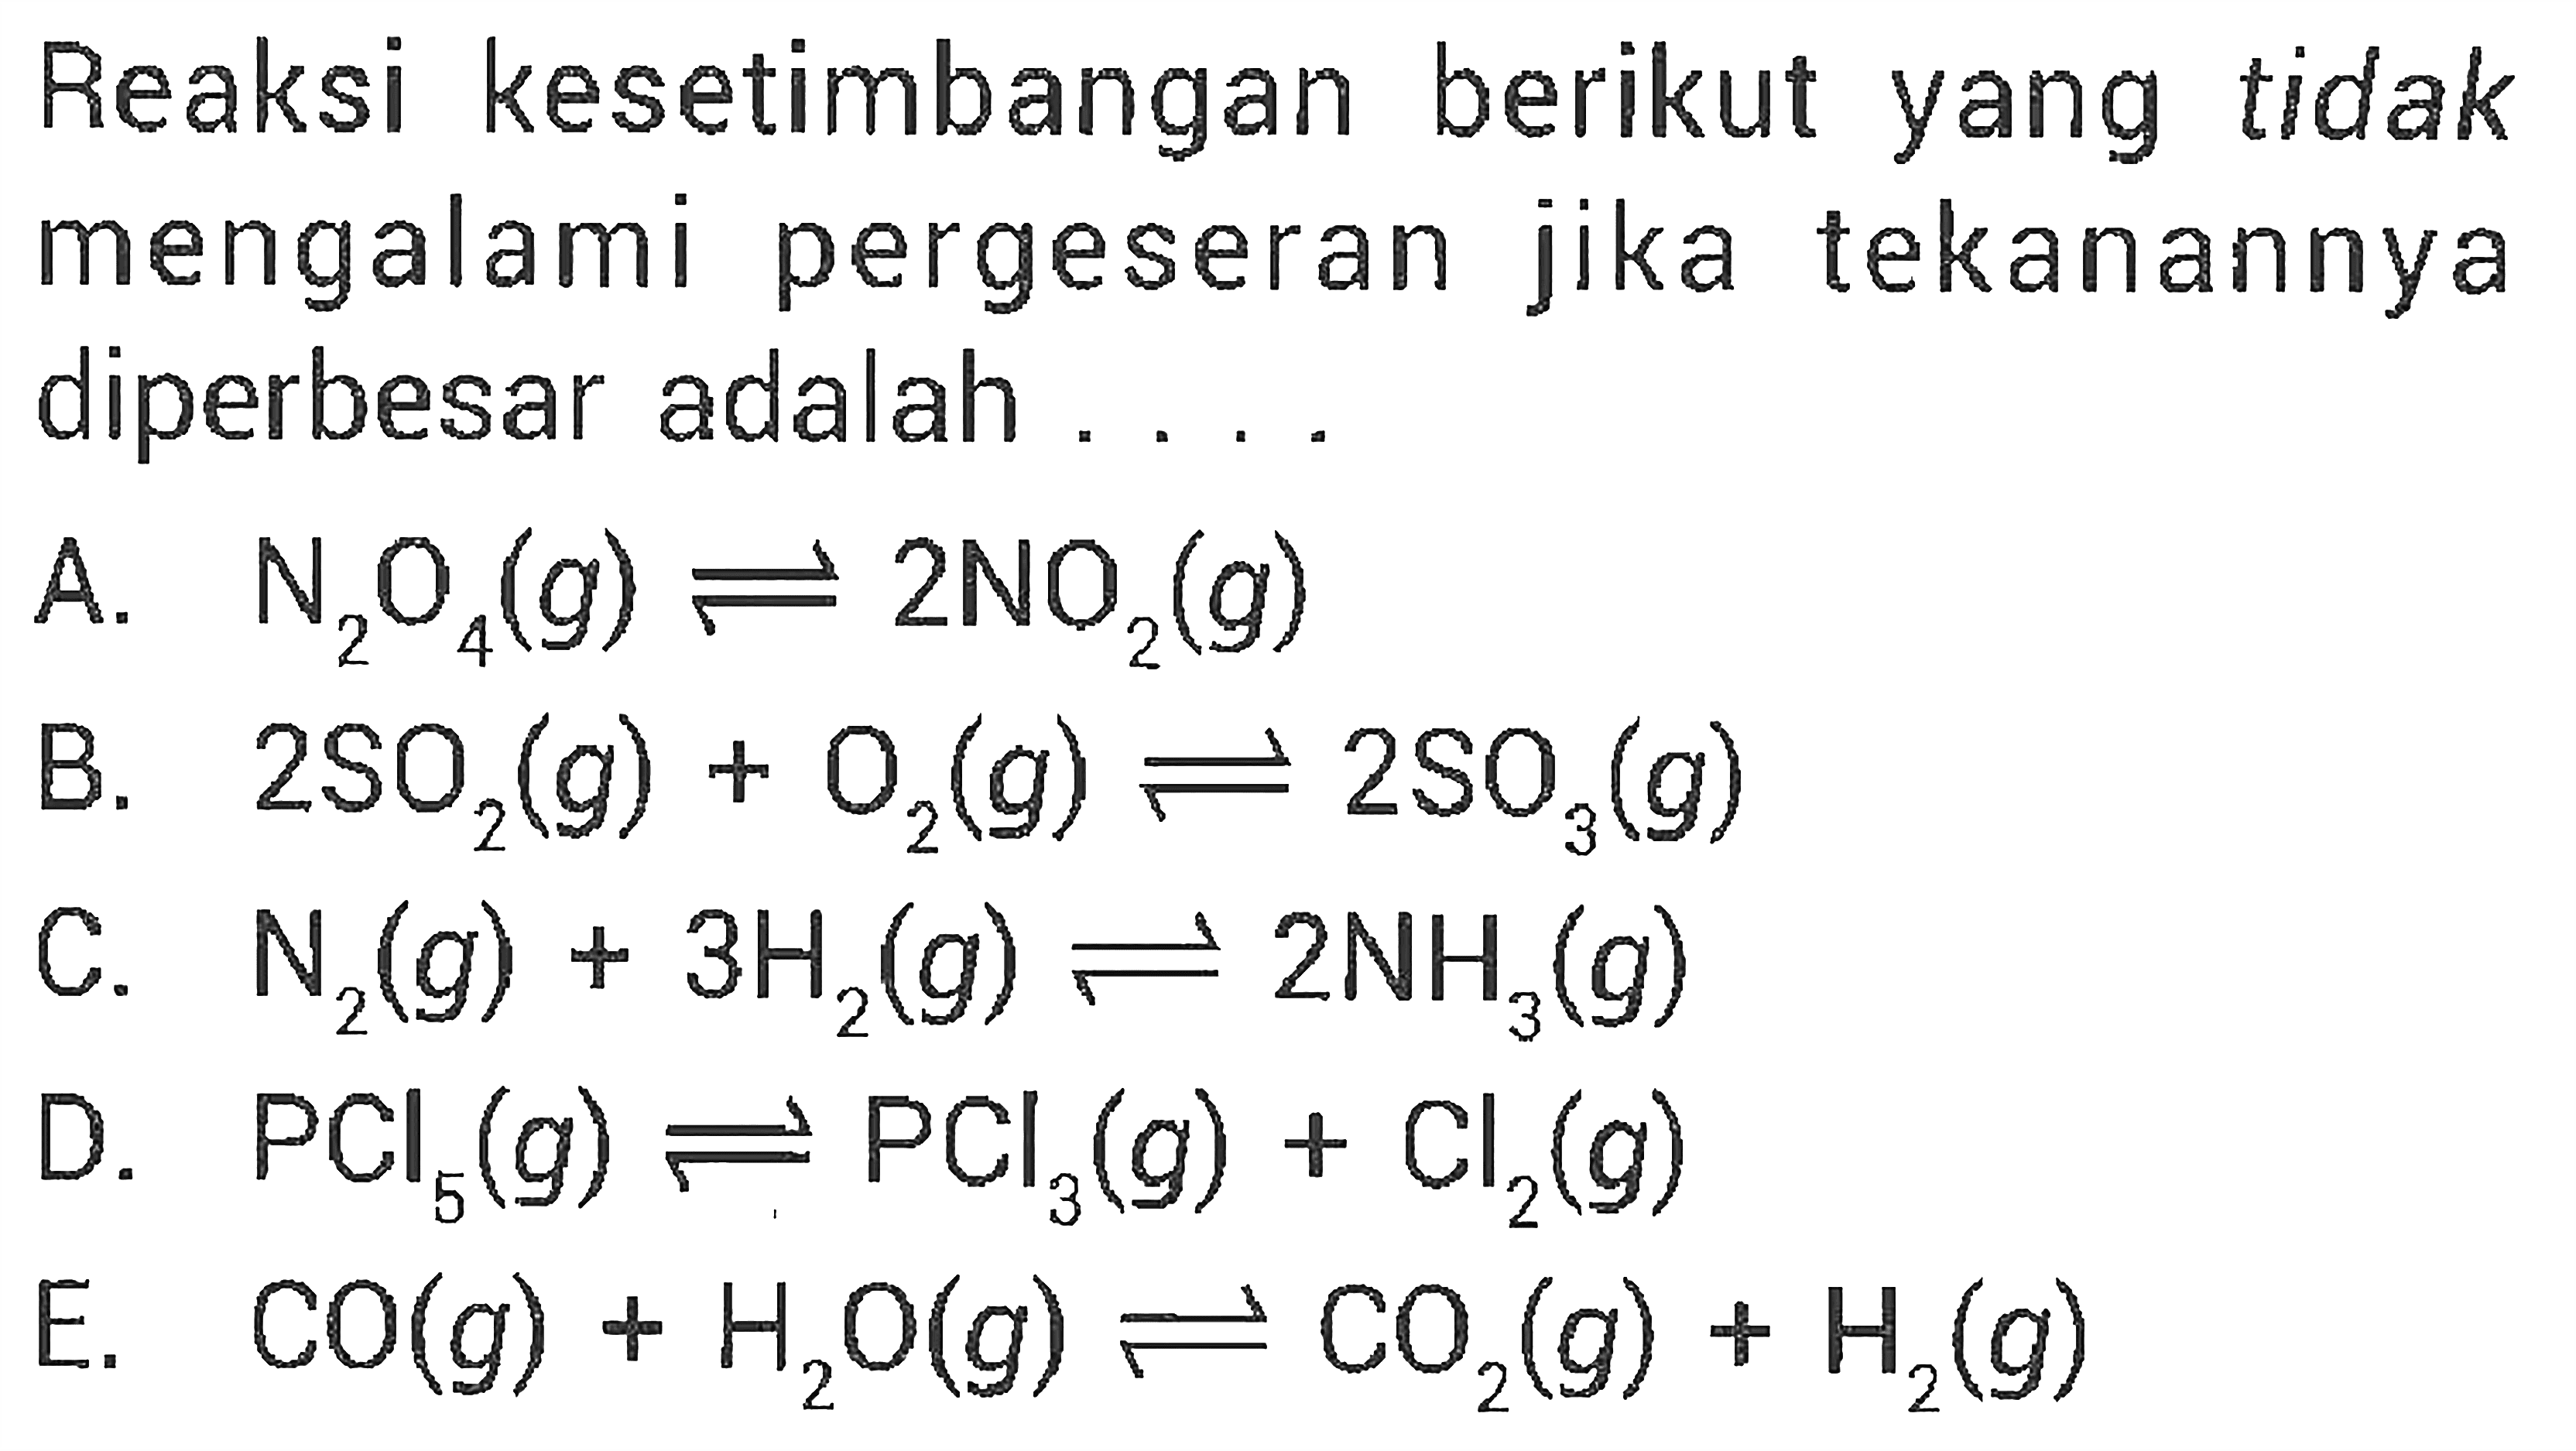 Reaksi kesetimbangan berikut yang tidak mengalami pergeseran jika tekanannya diperbesar adalah ....A. N2O4(g) <=> 2NO2(g) B. 2SO2(g) + O2(g) <=> 2SO3(g) C. N2(g) + 3H2(g) <=> 2NH3(g) D. PCl5(g) <=> PCl3(g) + Cl2(g) E. CO(g) + H2O(g) <=> CO2(g) + H2(g)  